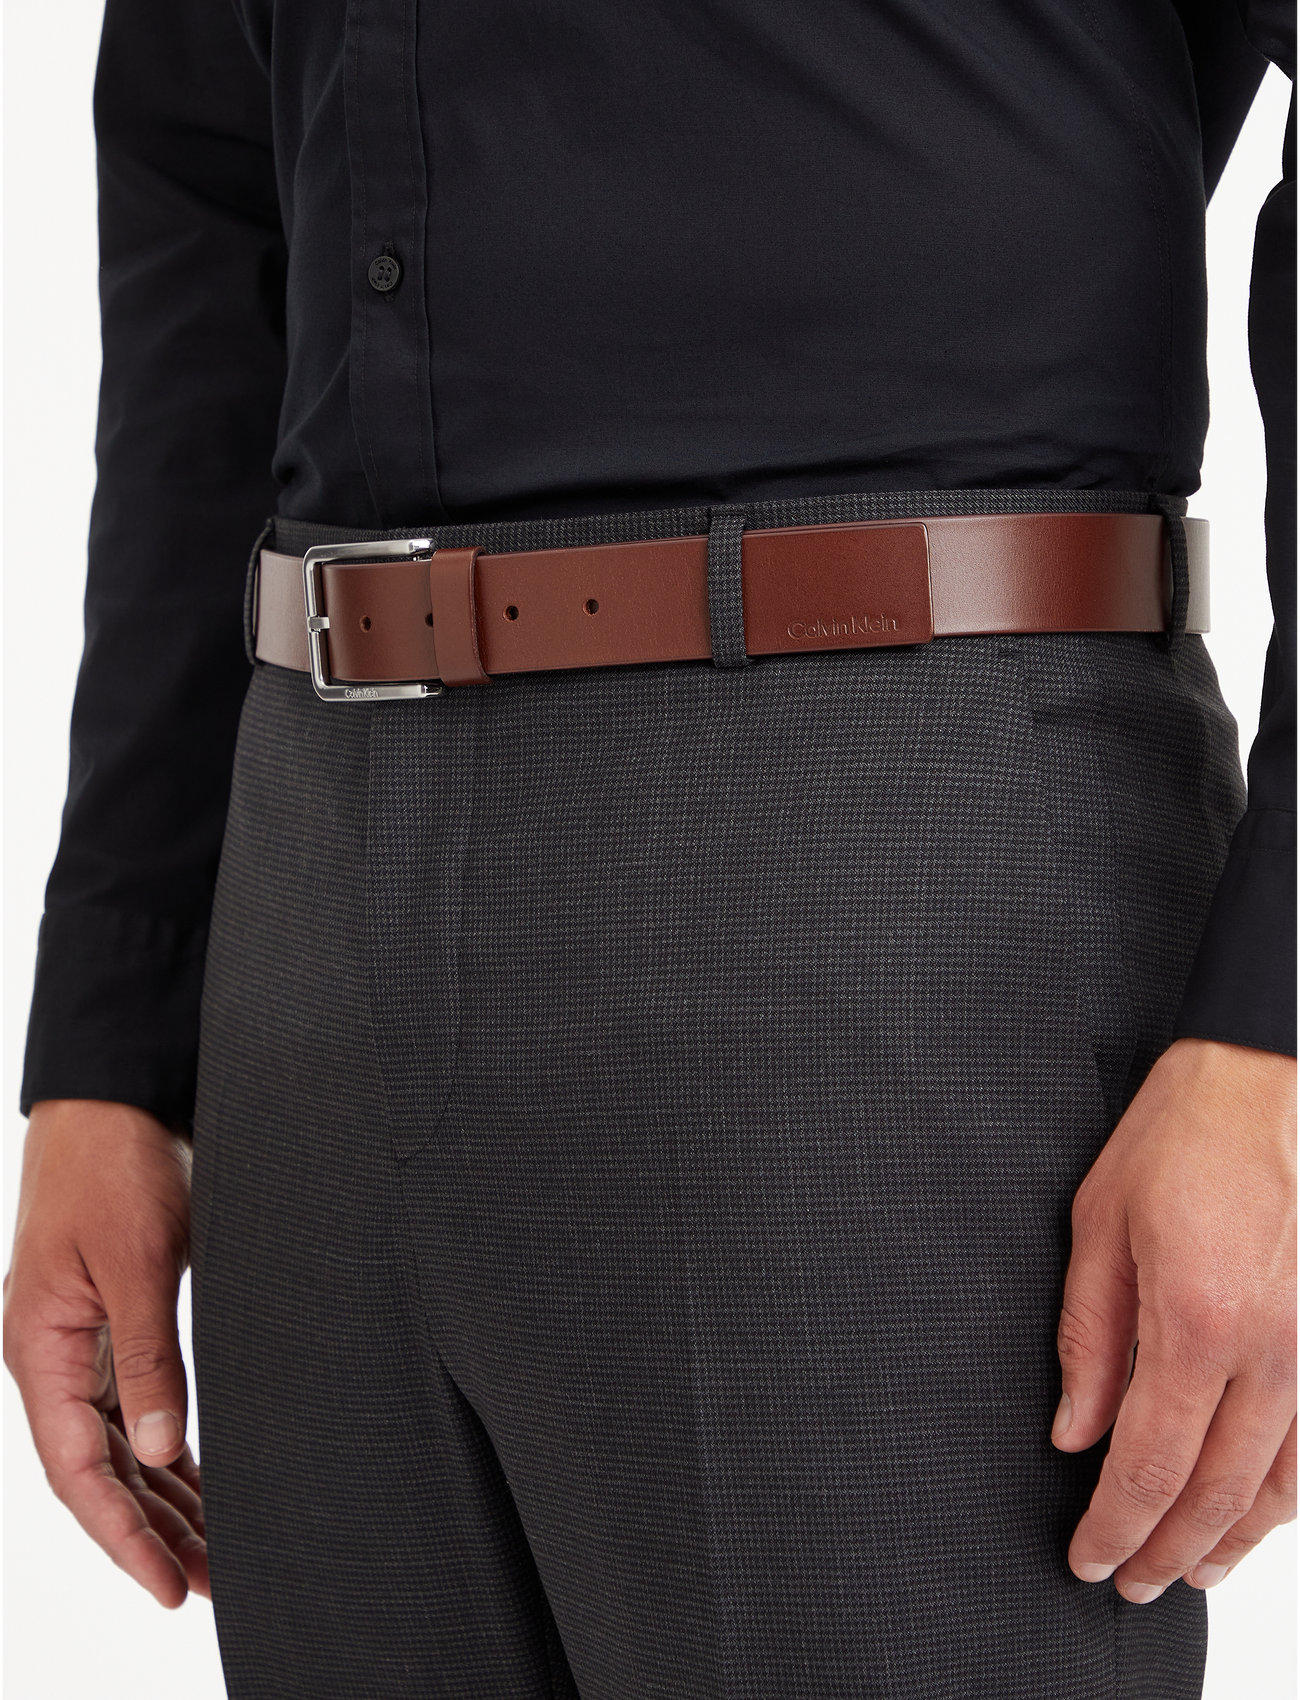 Warmth - Klein Belts Calvin 35mm Smooth